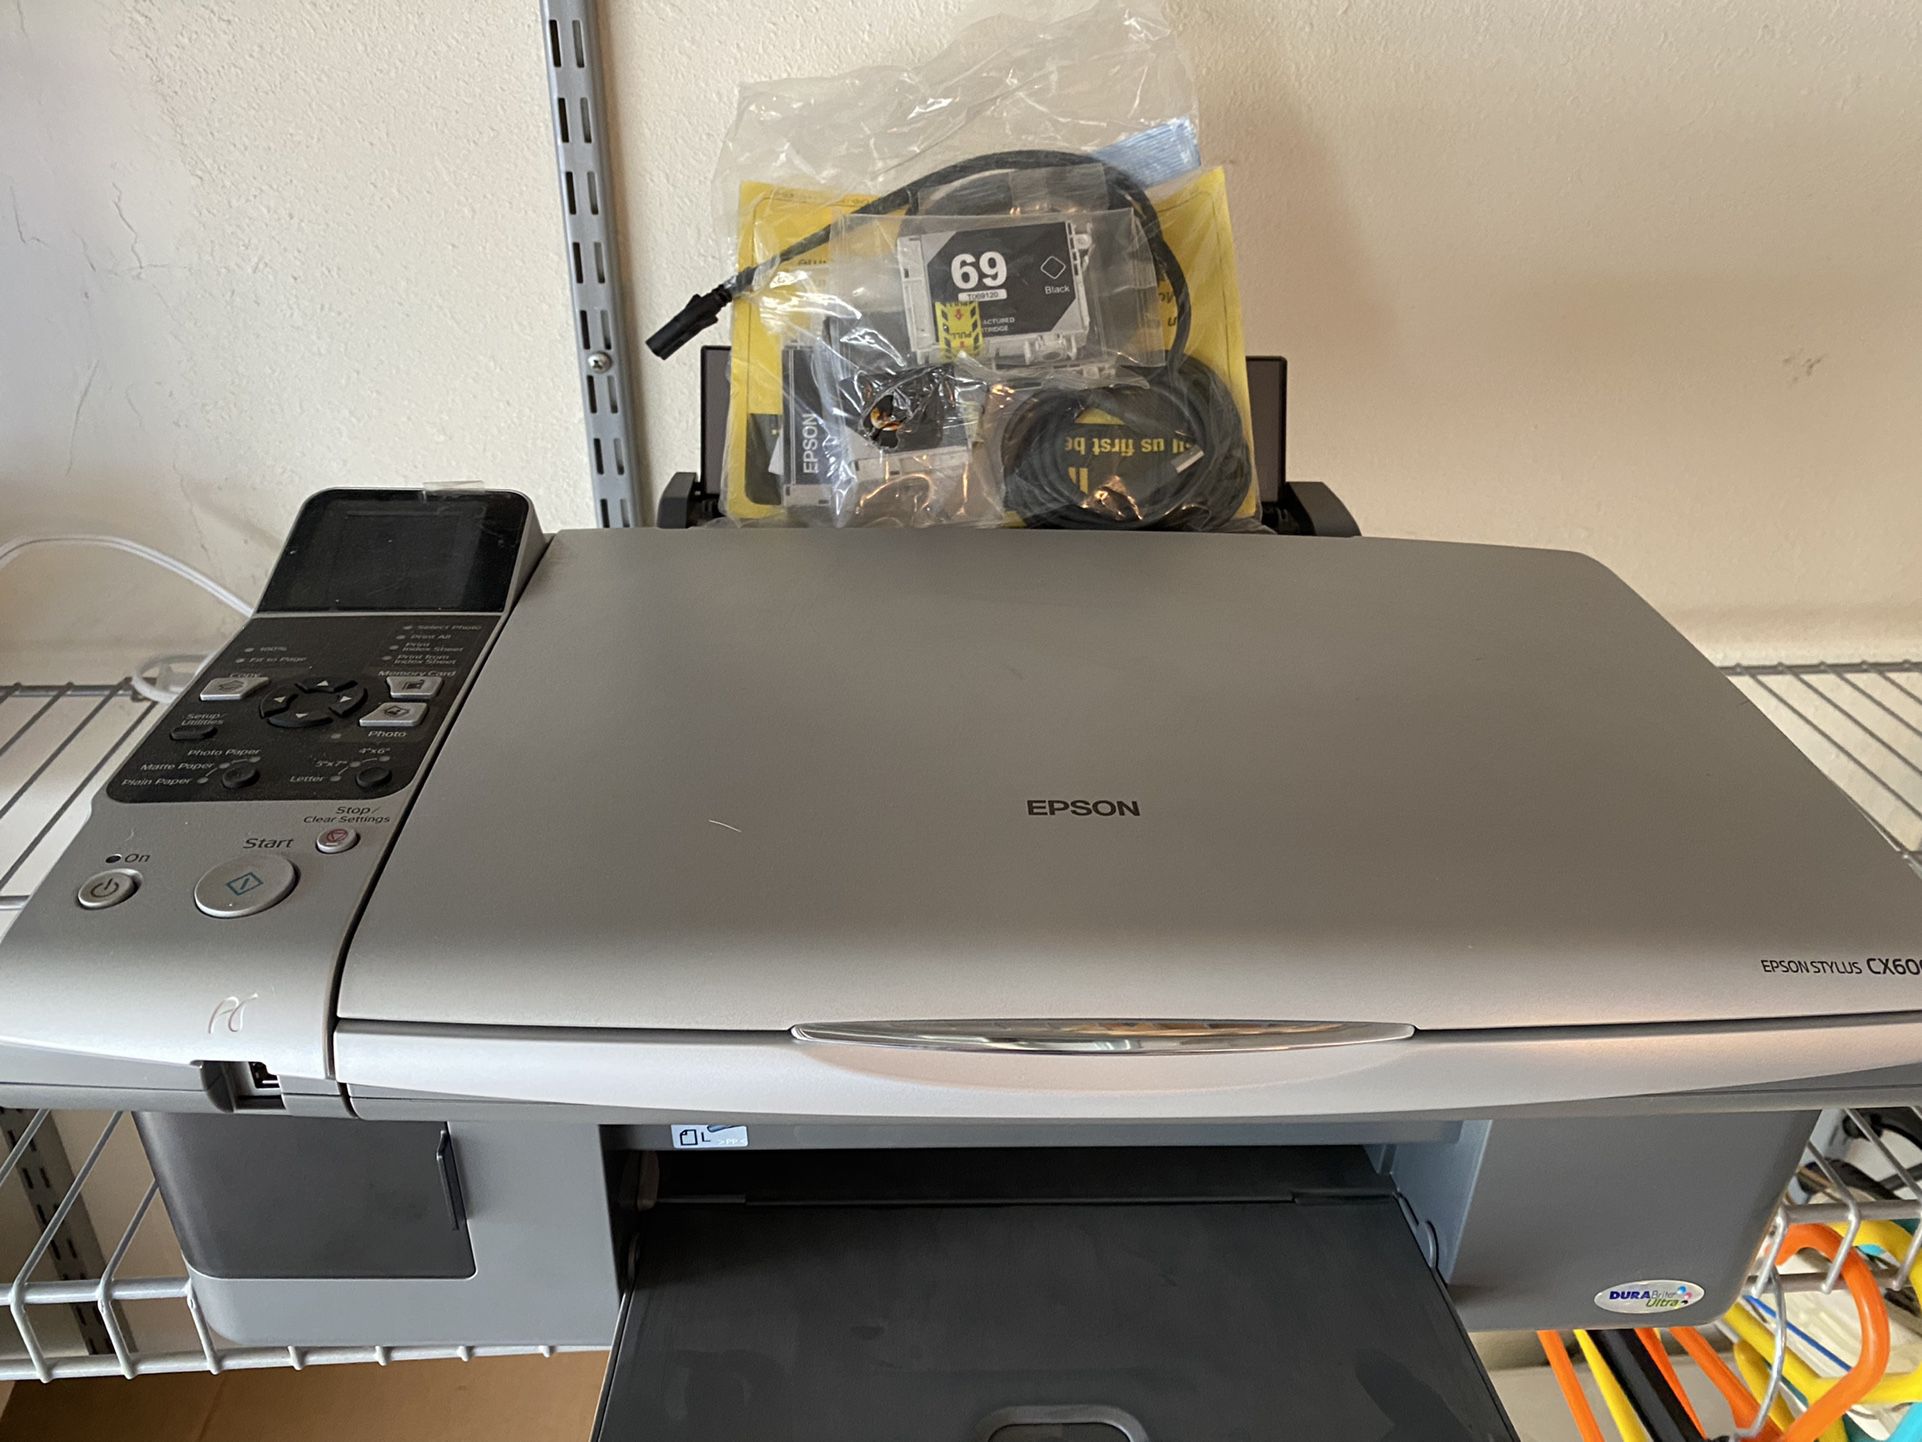 Epson Printer, Copier, Scanner And Fax Machine